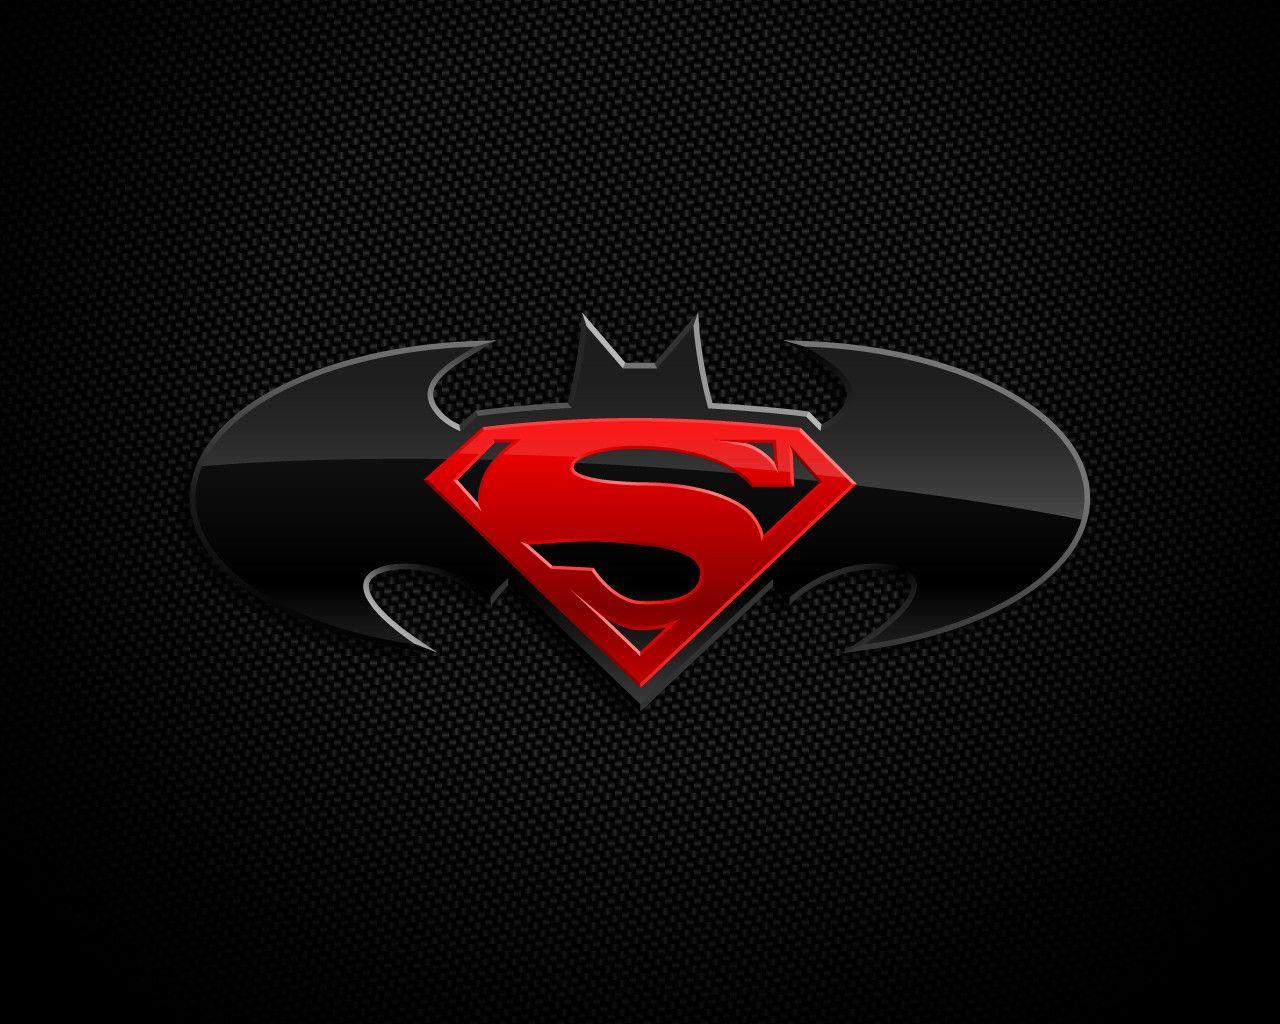 Batman With Superman Logos. LOGOS & BRANDS